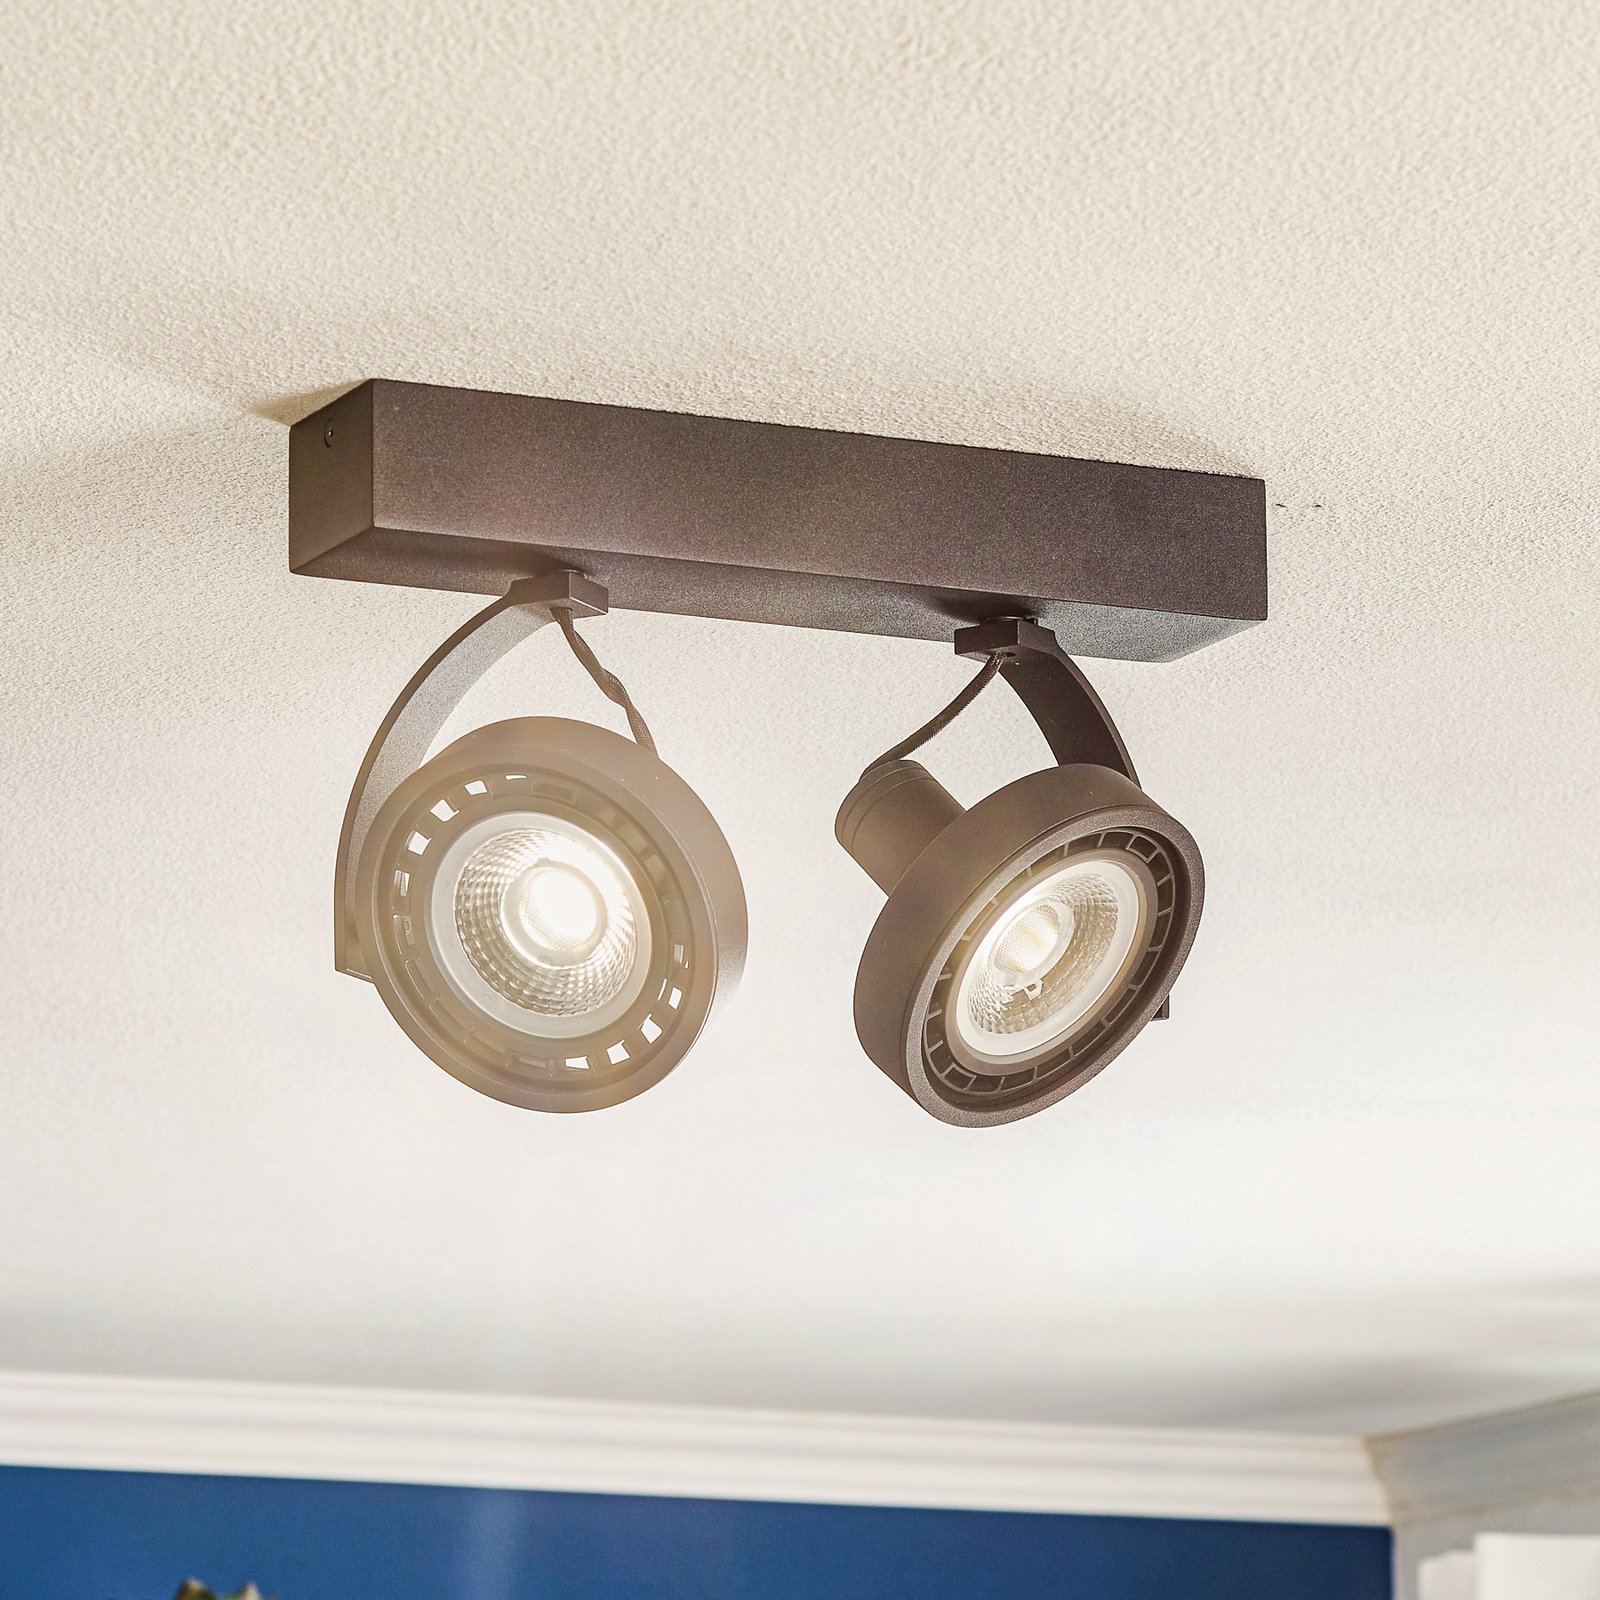 LED-takspotlight Dorian med två ljuskällor, dimbar till varm